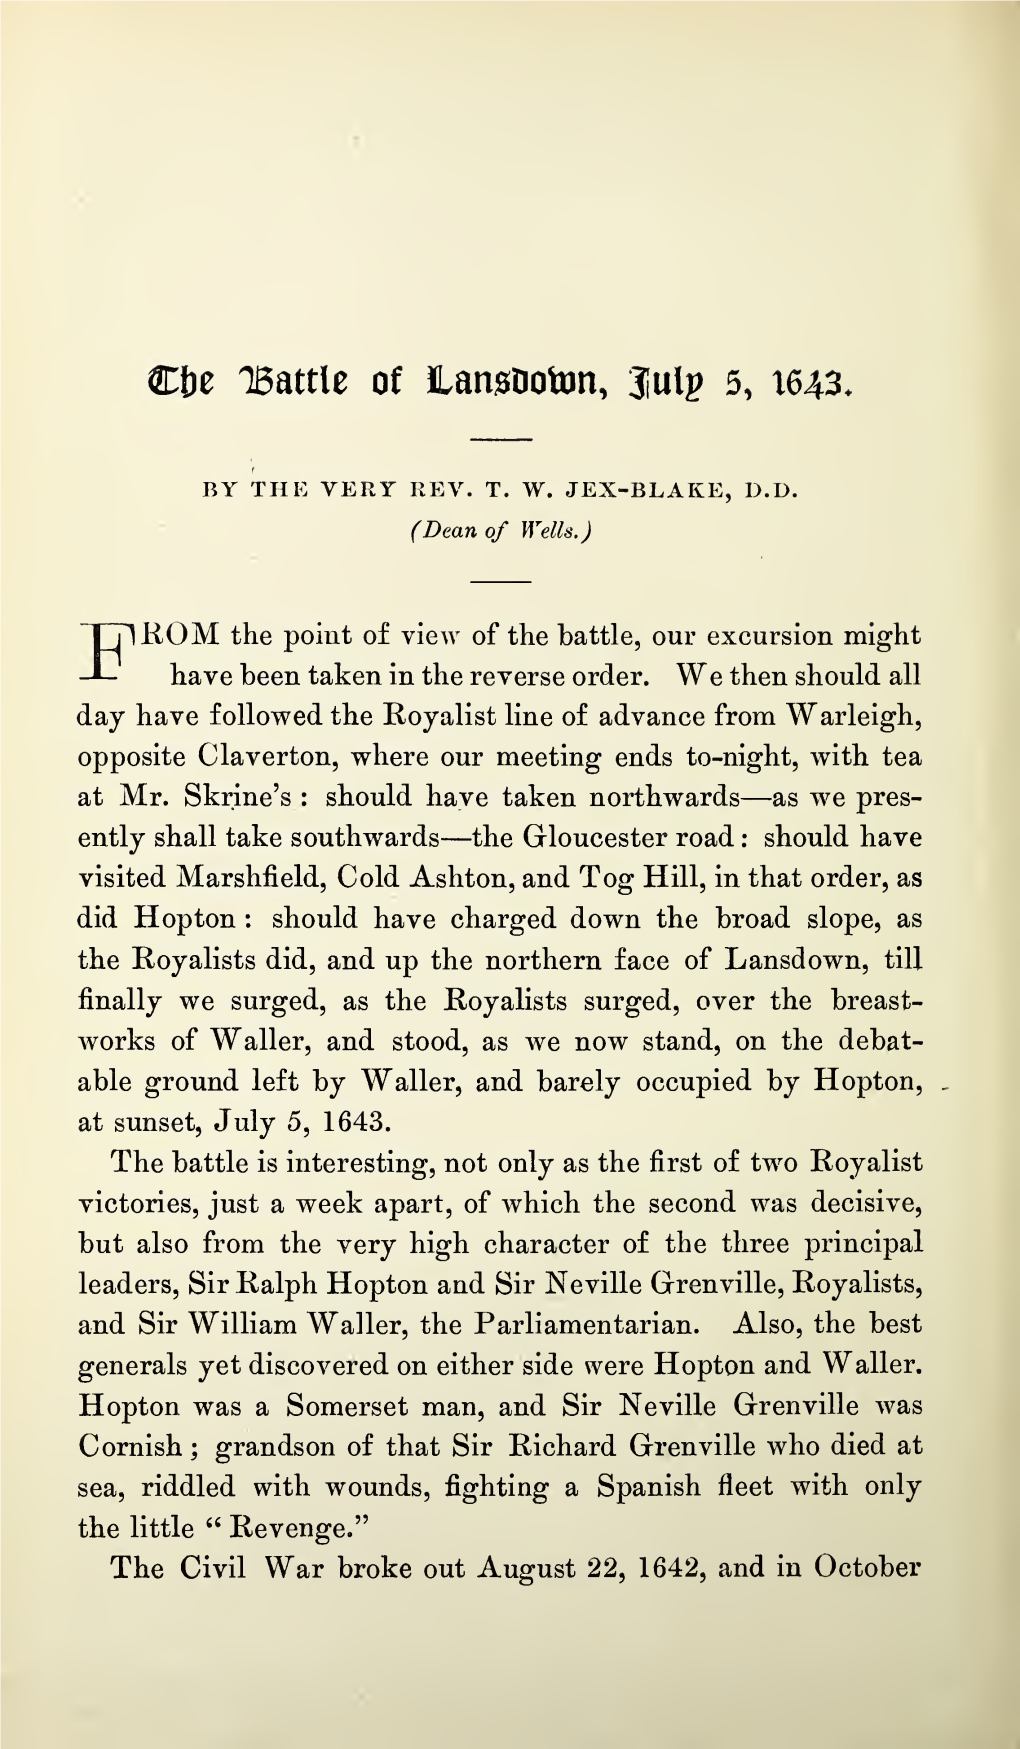 Jex-Blake, T W, the Battle of Lansdown, July 5, 1643, Part II